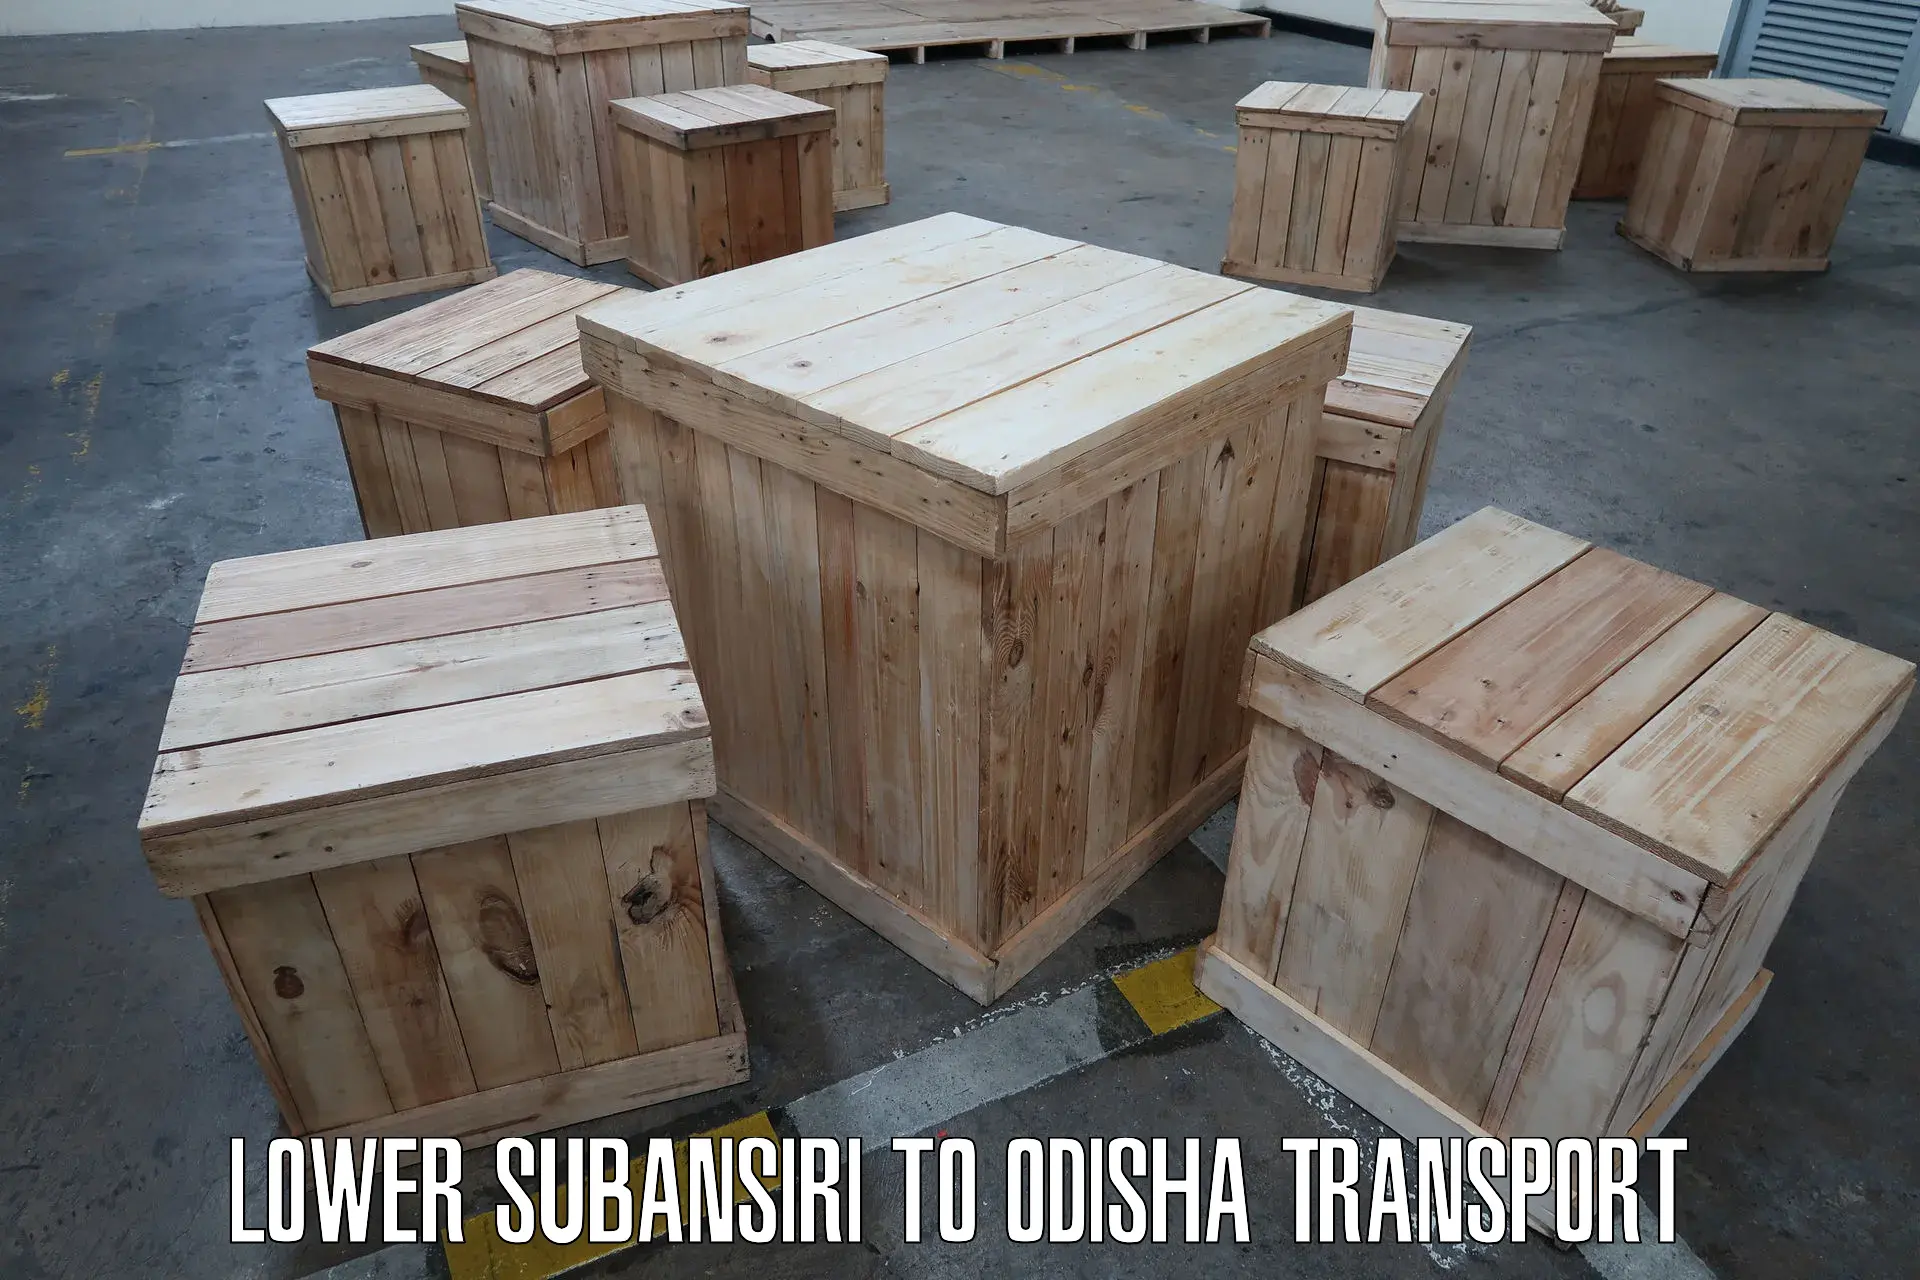 Furniture transport service Lower Subansiri to Balikuda